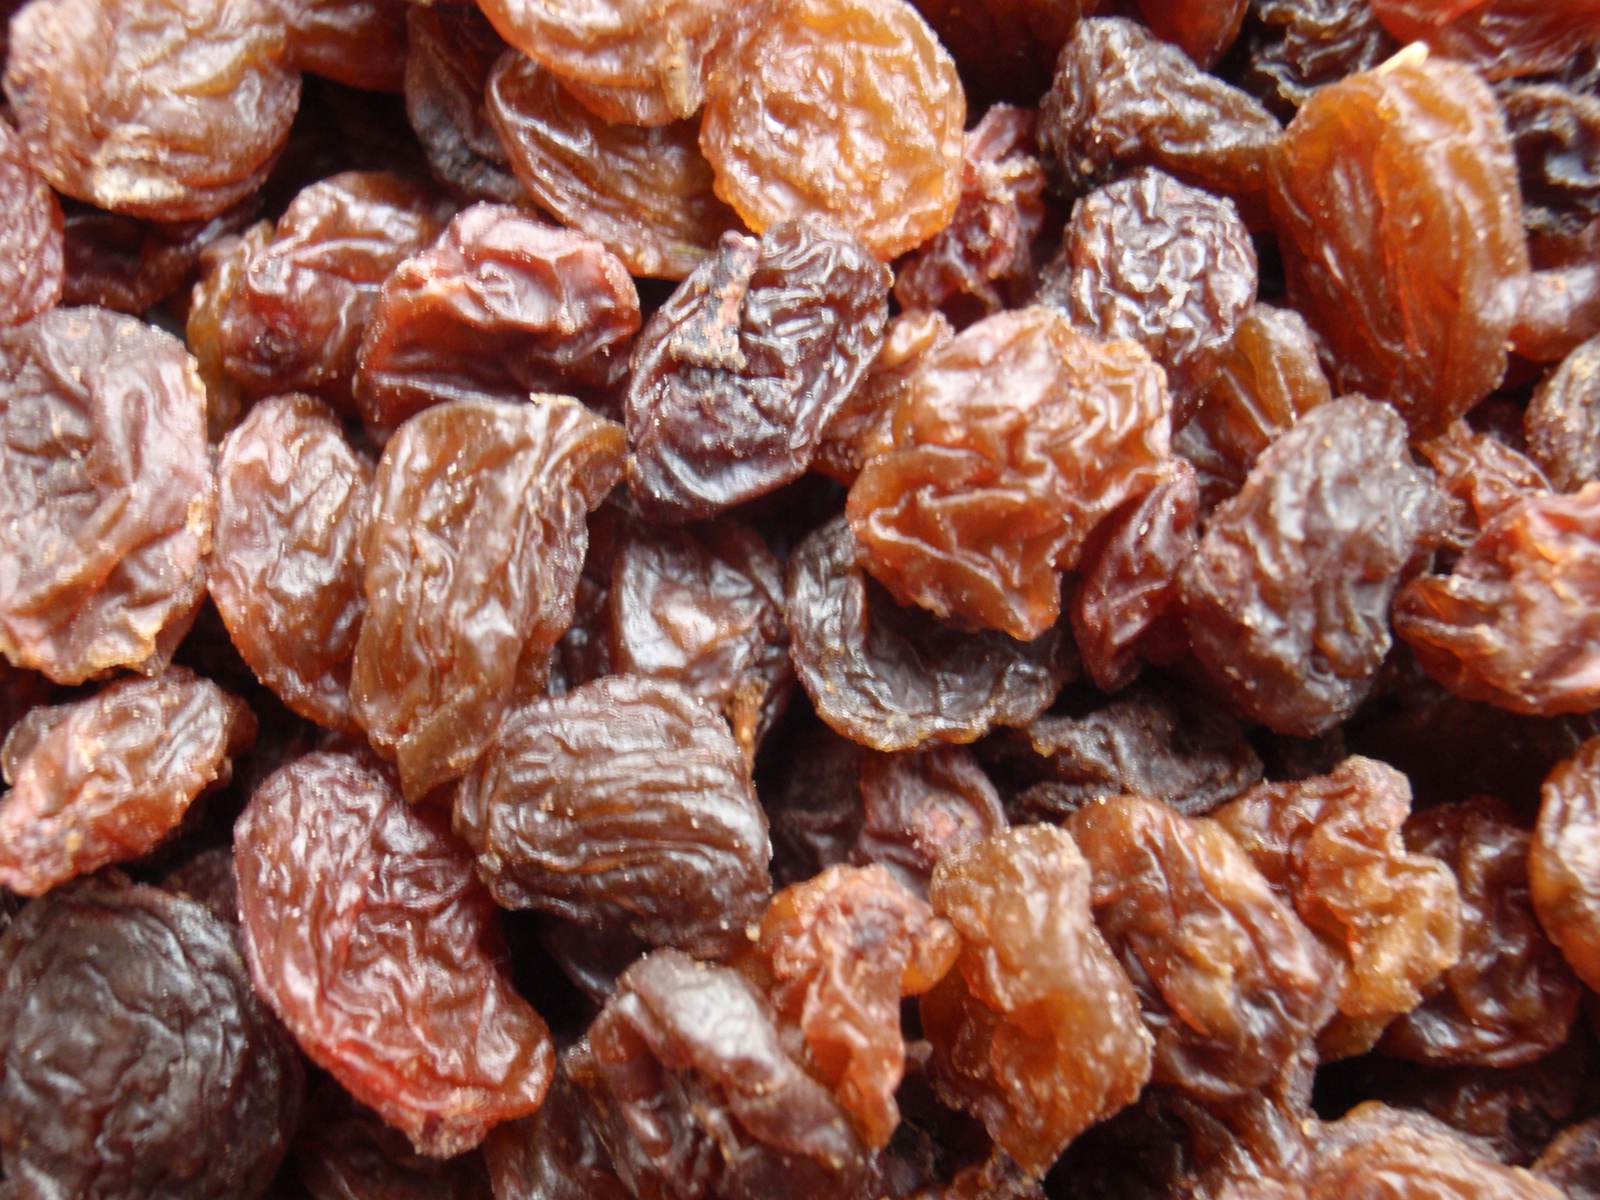 Brown raisins